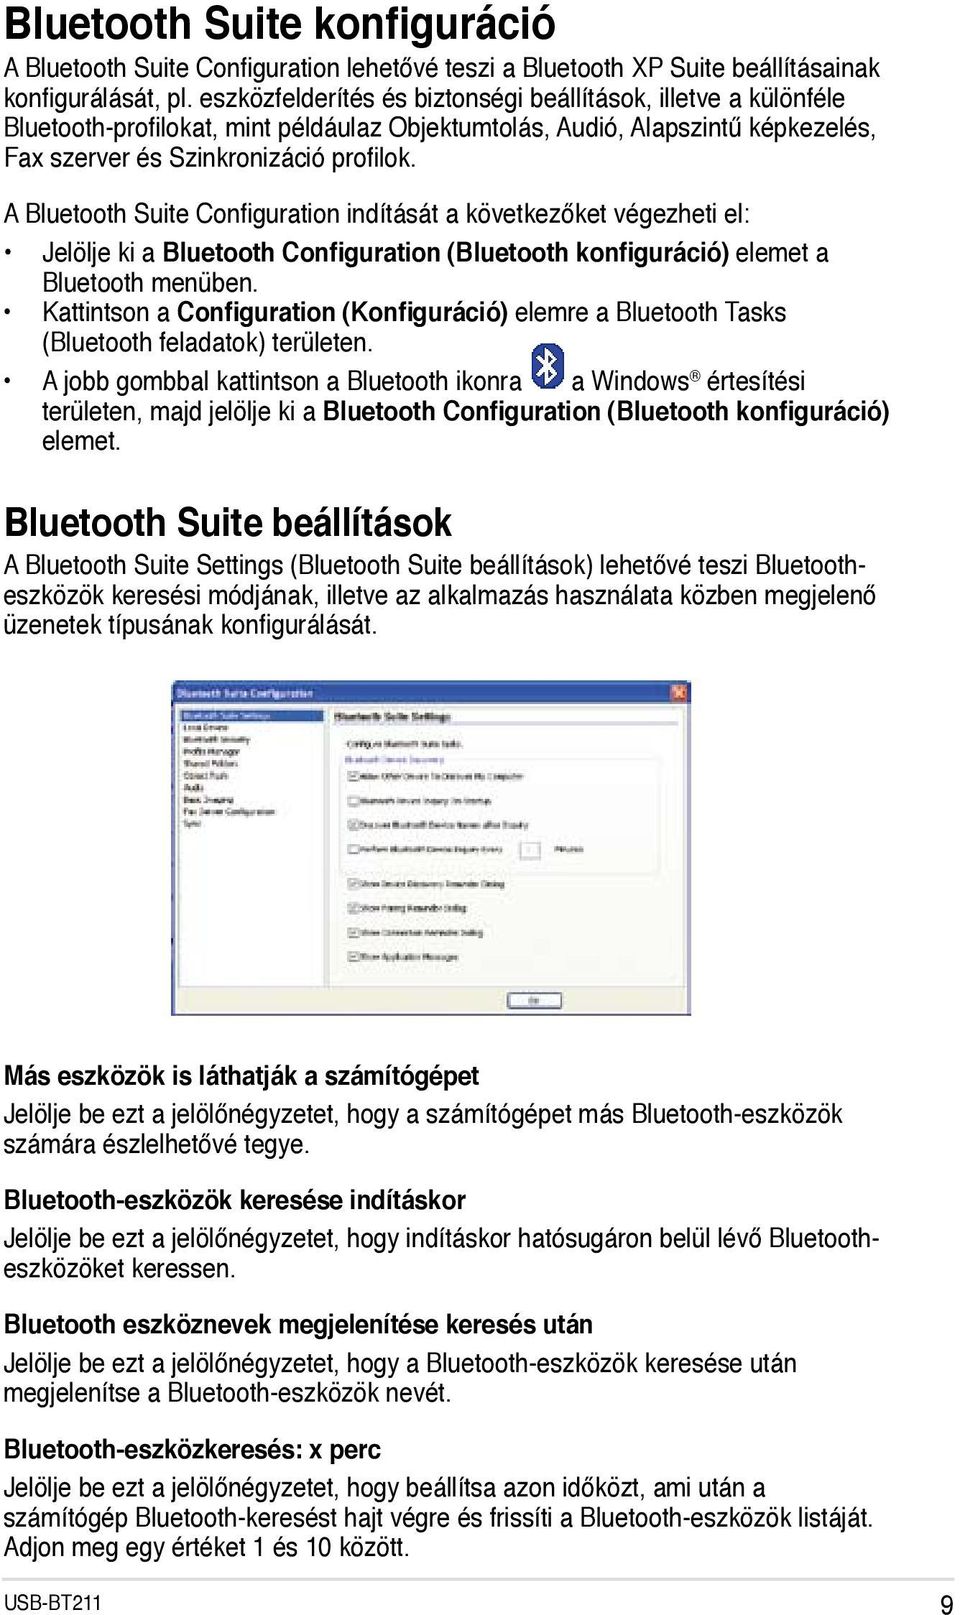 A Bluetooth Suite Configuration indítását a következőket végezheti el: Jelölje ki a Bluetooth Configuration (Bluetooth konfiguráció) elemet a Bluetooth menüben.